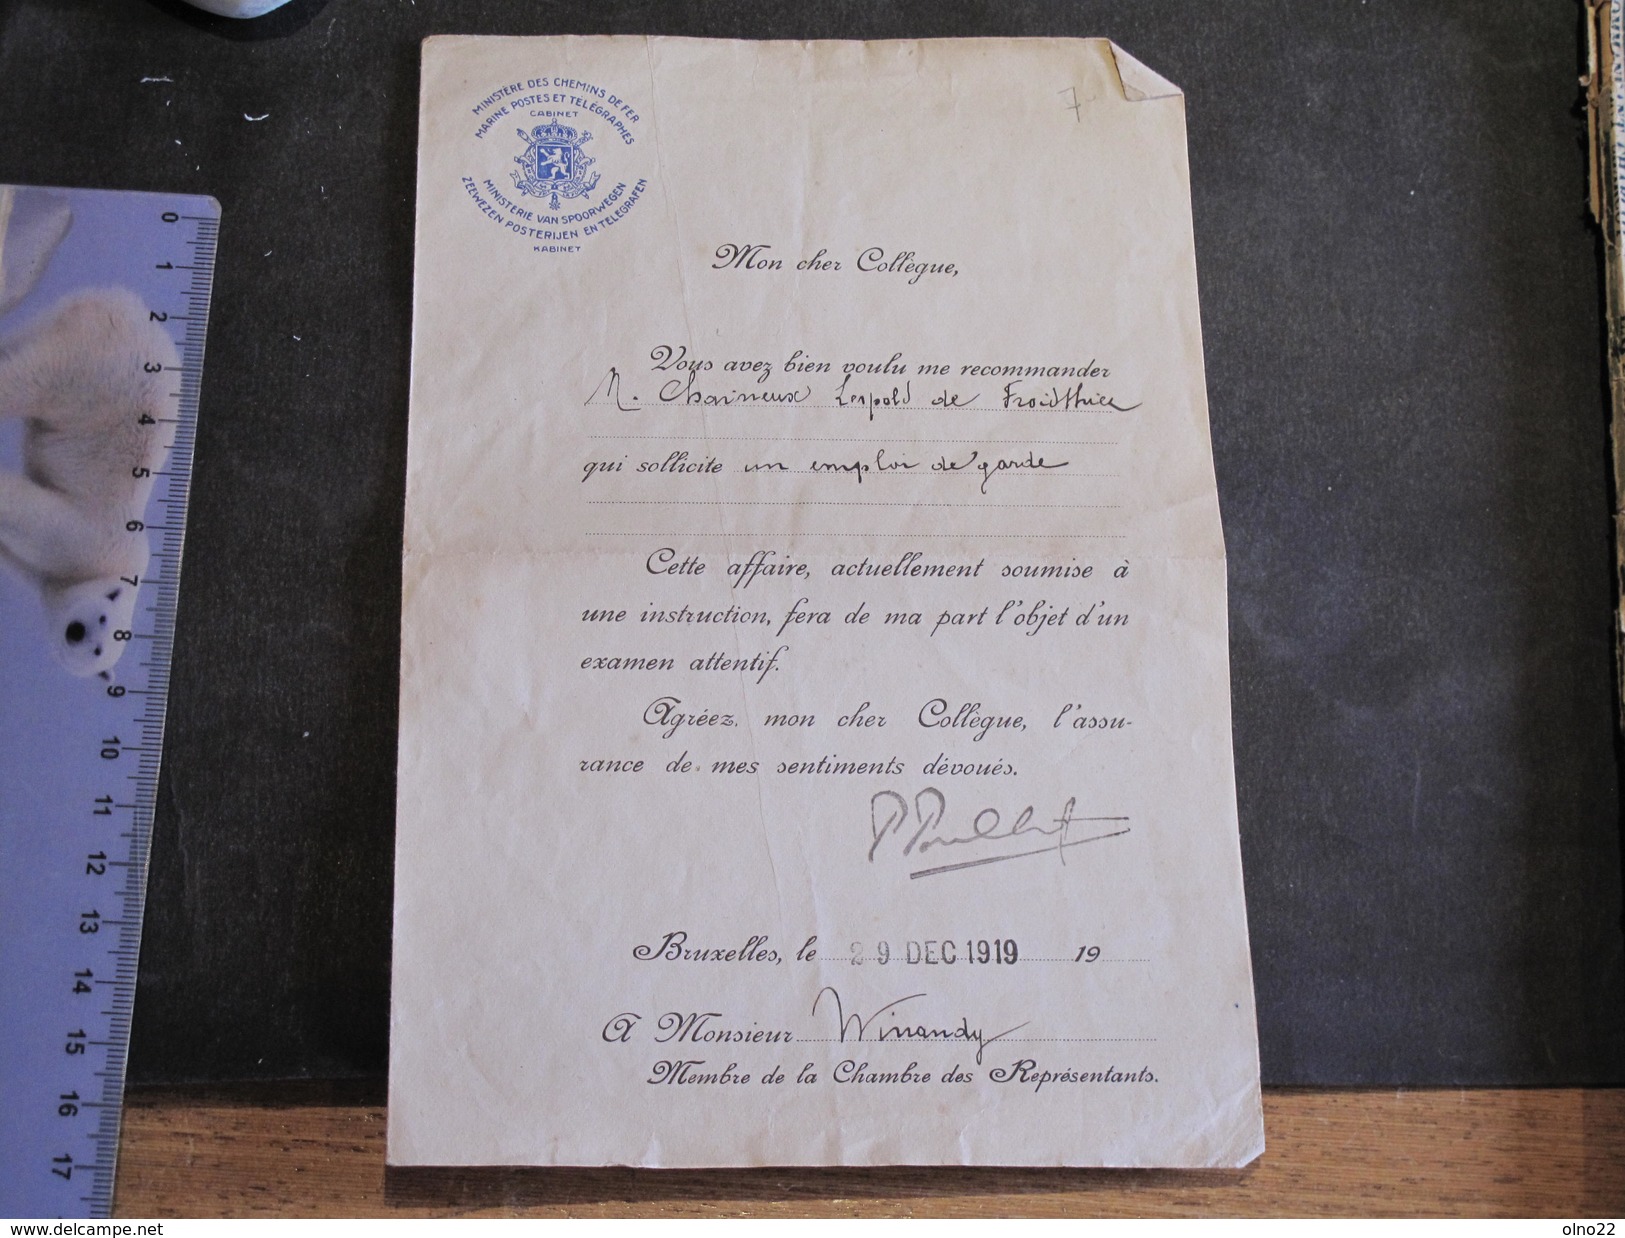 FROIDTHIER- Lettre De Recommandation De M WINANDY Relative à Un Emploi De Garde Pour CHAINEUX Léopold 29/128/19 - Manuscritos